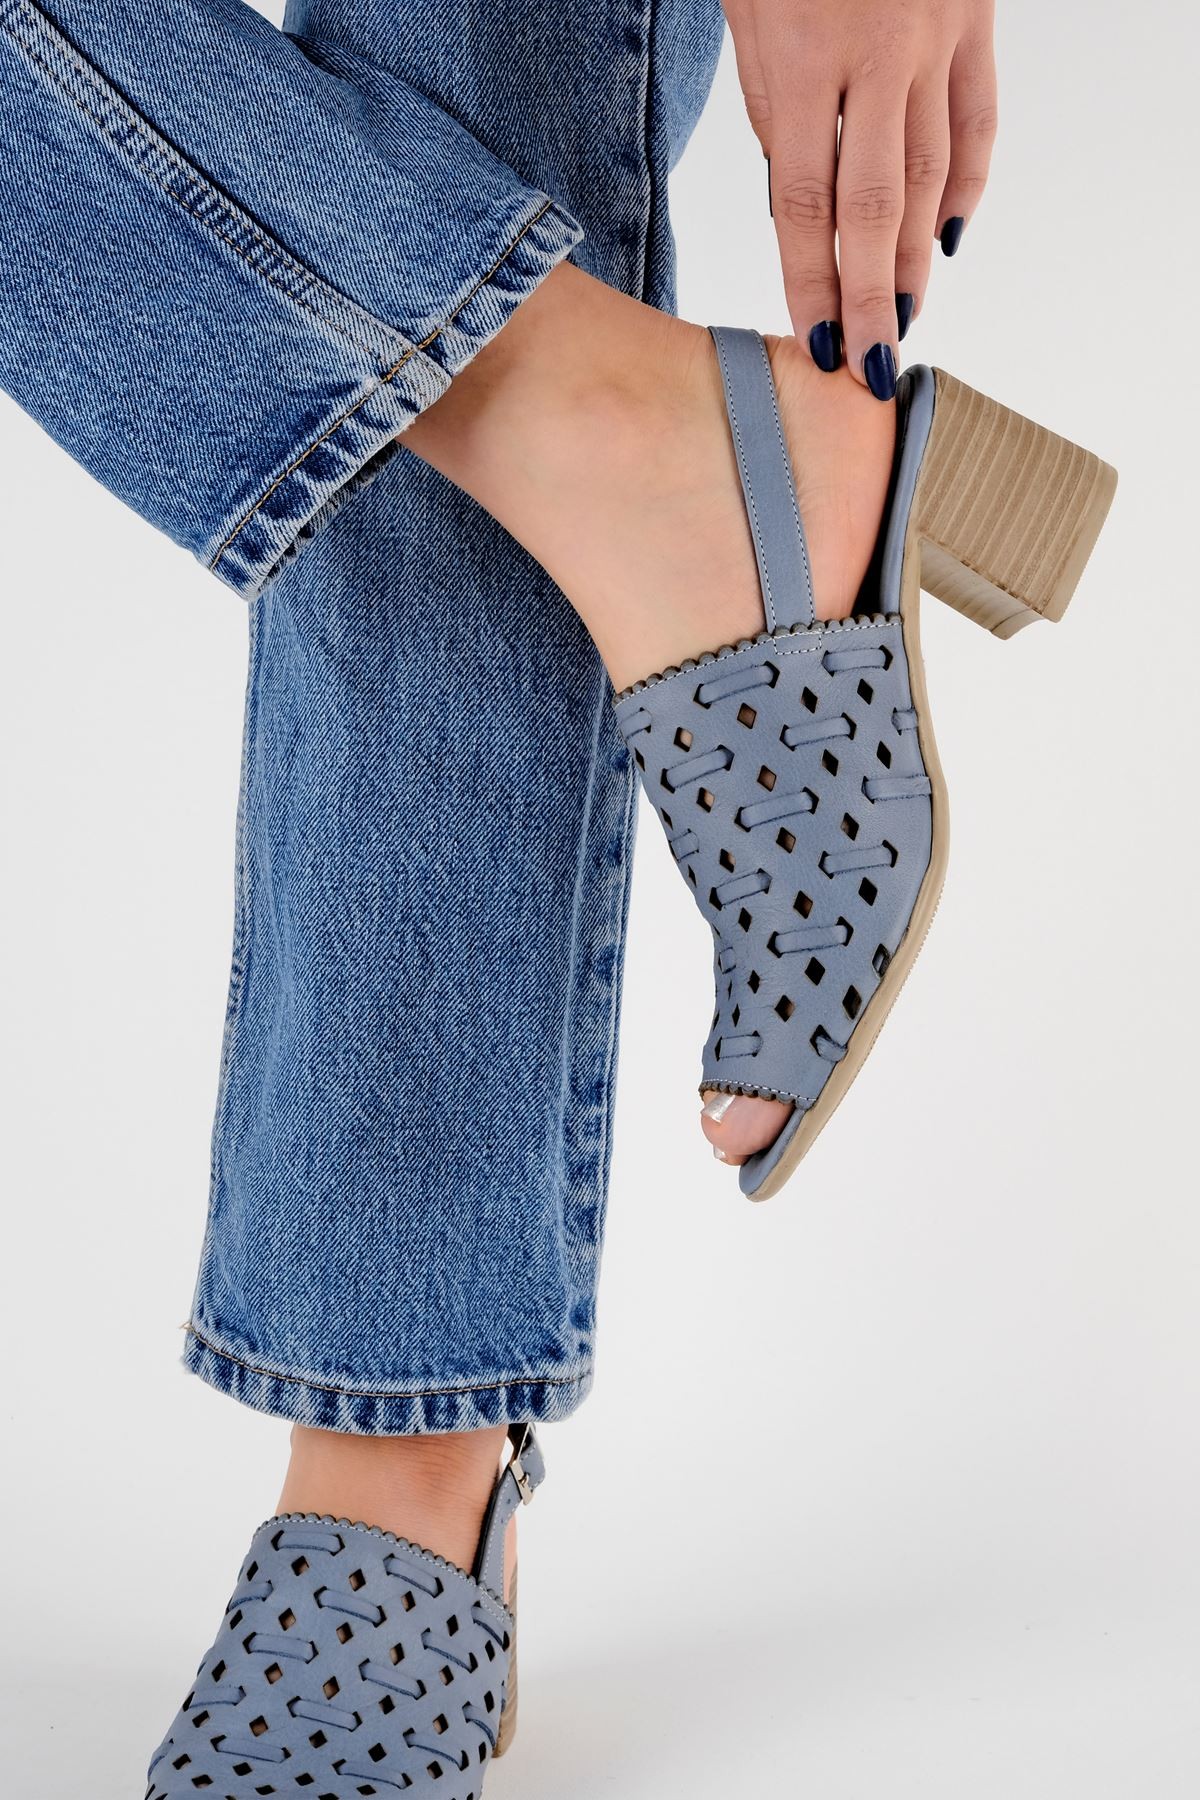 Opaly Kadın Hakiki Deri Arkası Açık Topuklu Sandalet B3187 - Mavi